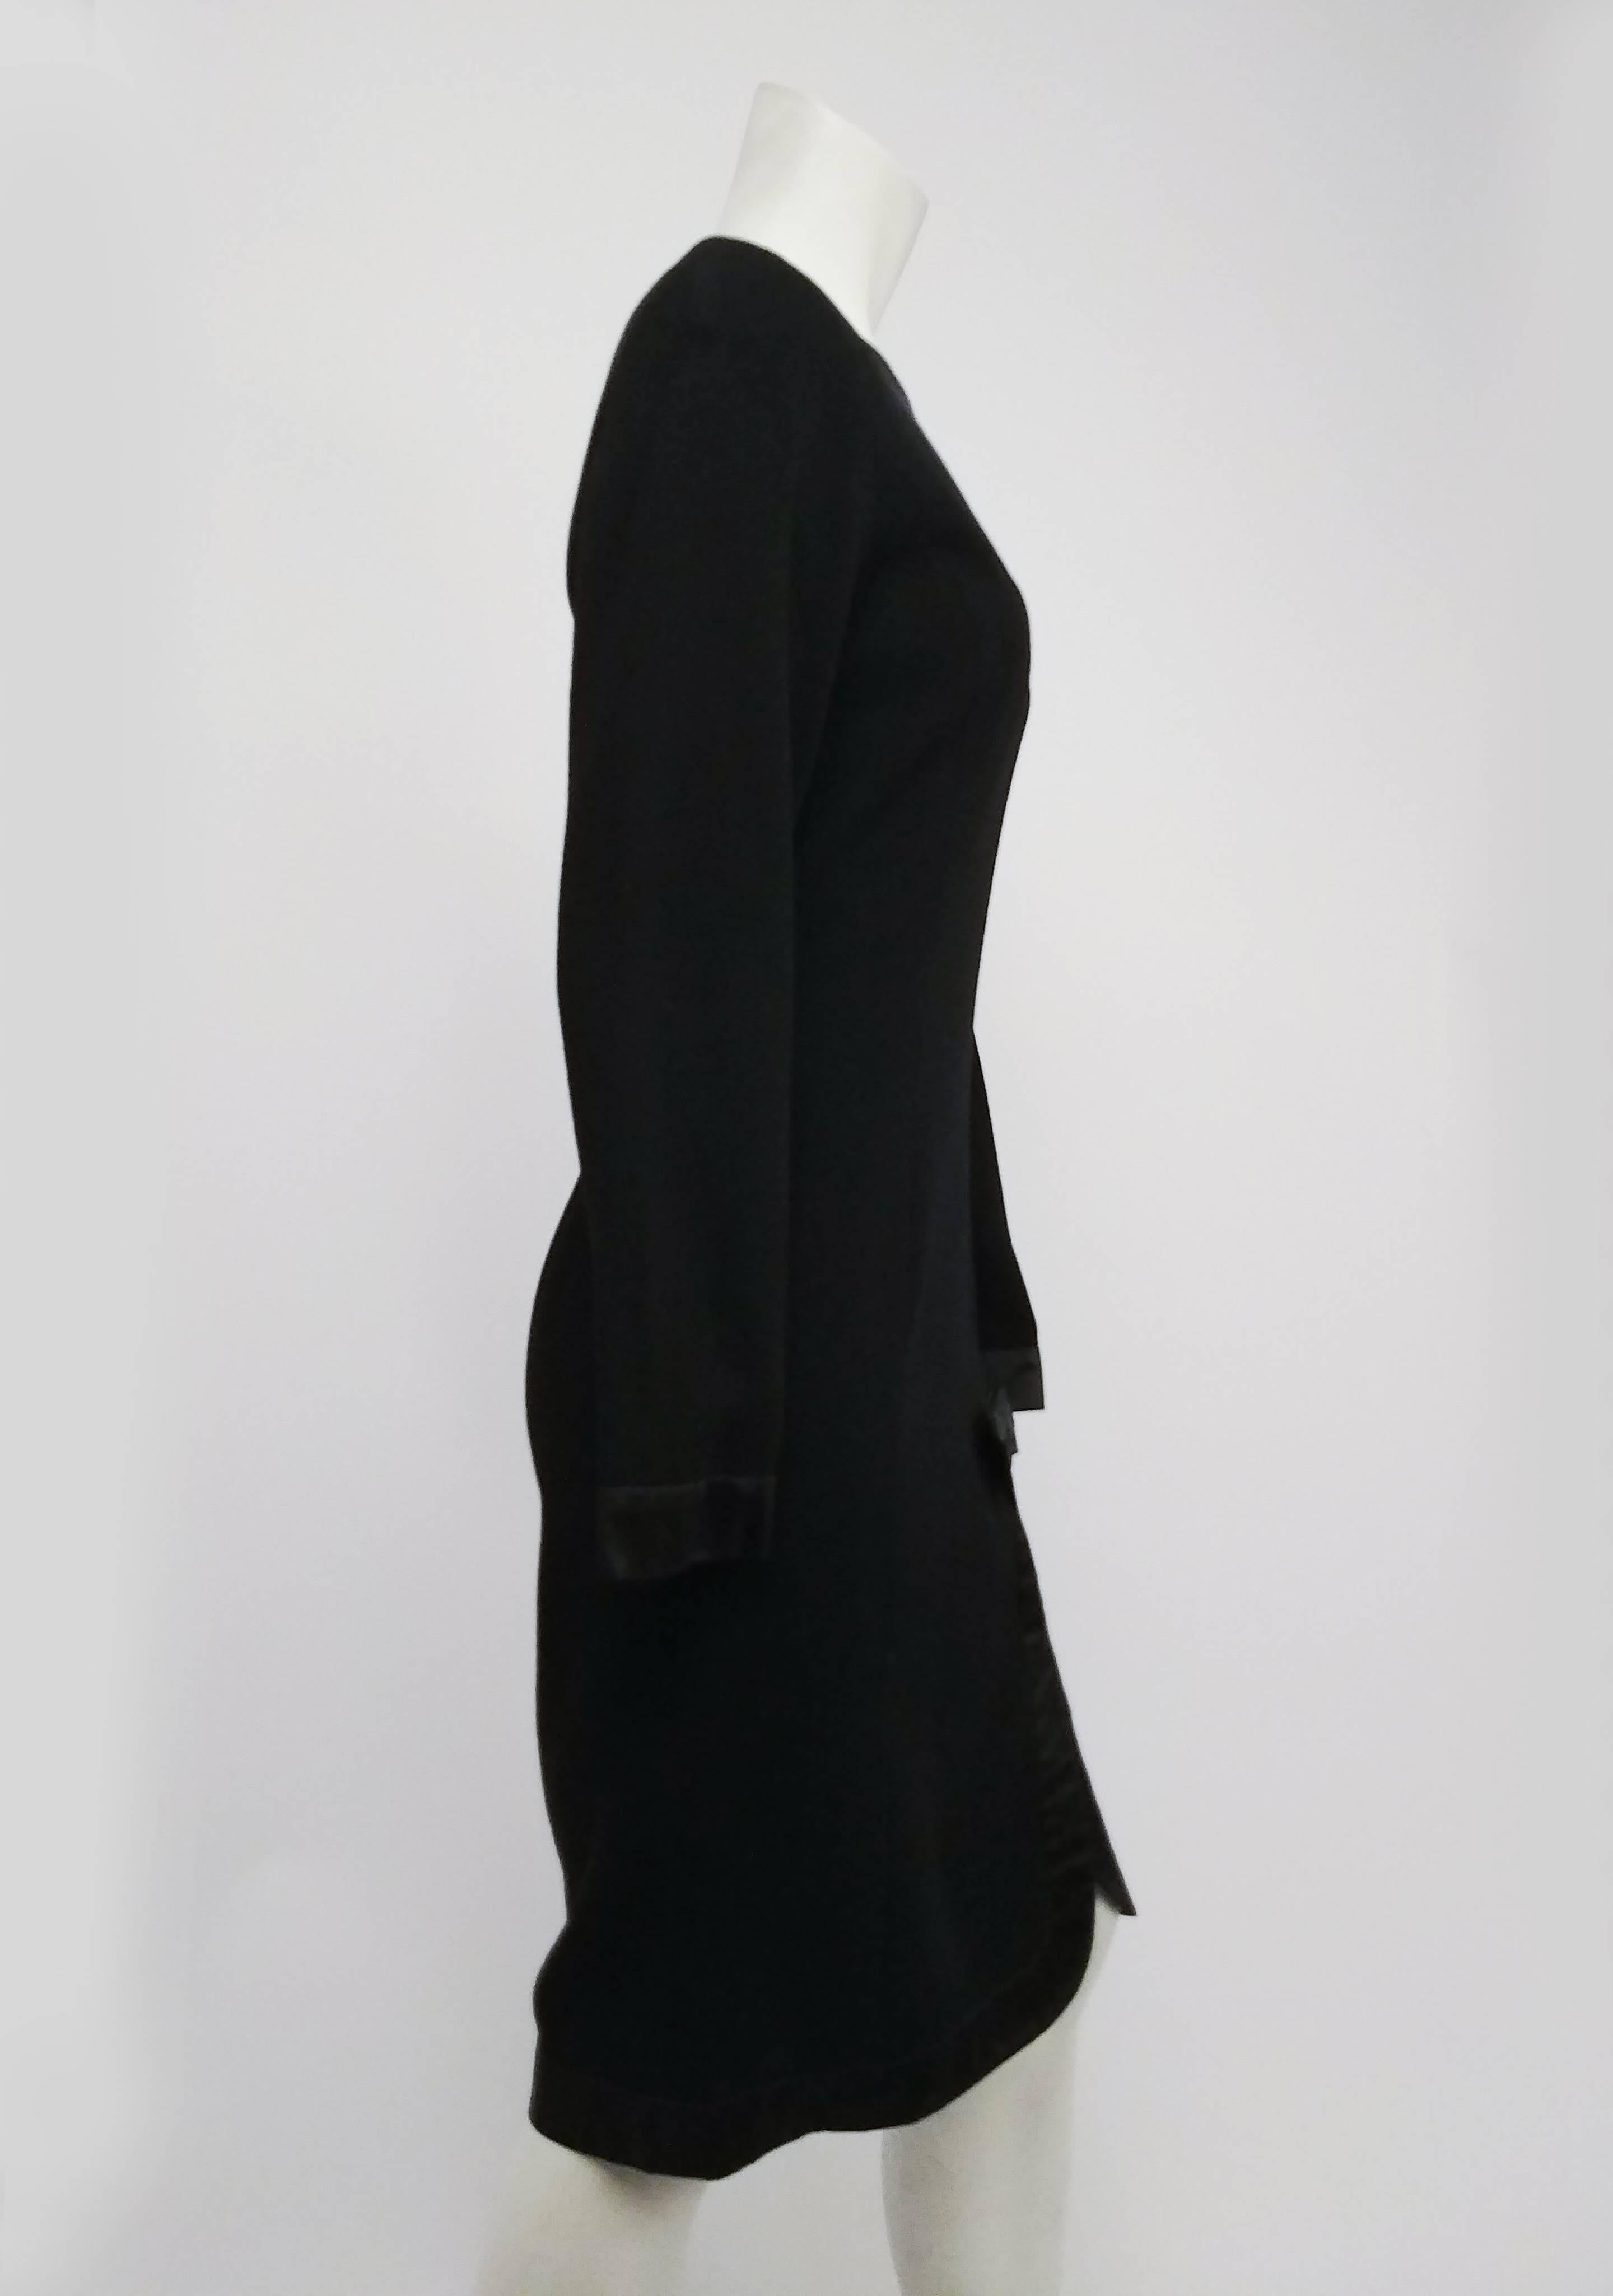 1980s Valetino Missy Black Cocktail Dress w/ Satin Trim. Organza peek-a-boo bib collar. Satin bow decorates trim at mid-thigh. 